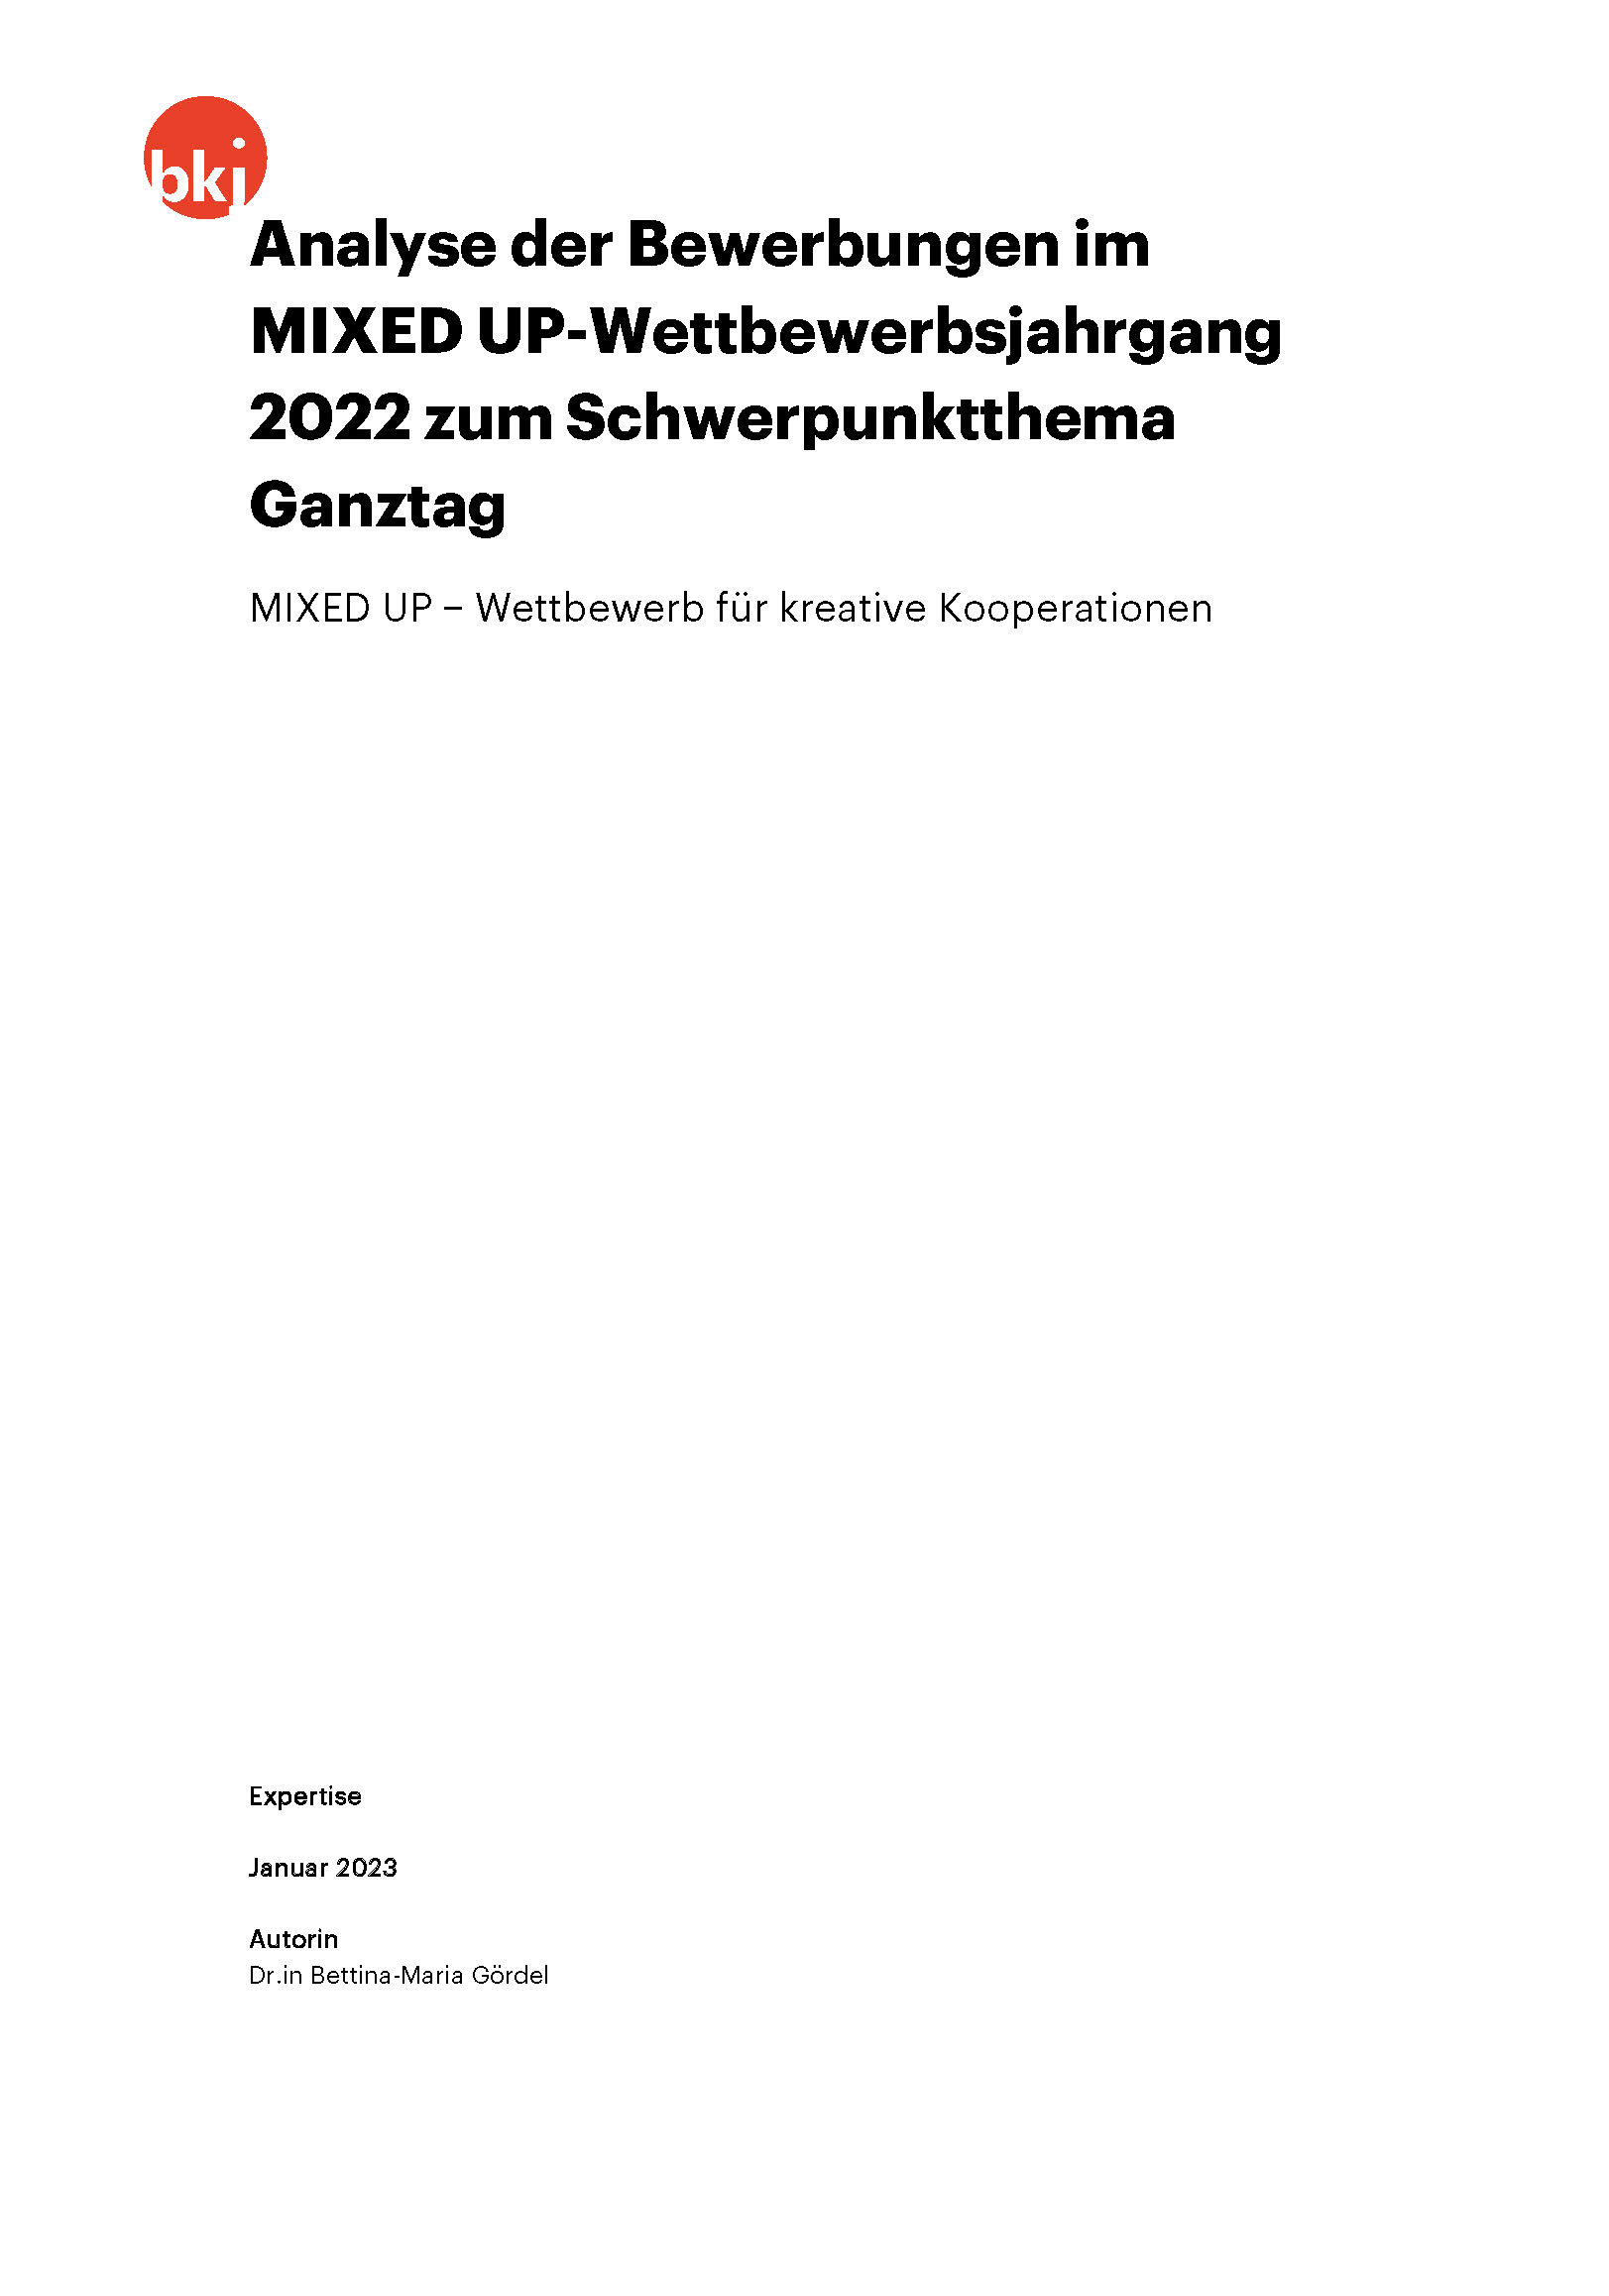 Titelbild zu Expertise: Analyse der Bewerbungen im MIXED UP-Wettbewerbsjahrgang 2022 zum Schwerpunktthema Ganztag. MIXED UP − Wettbewerb für kreative Kooperationen 